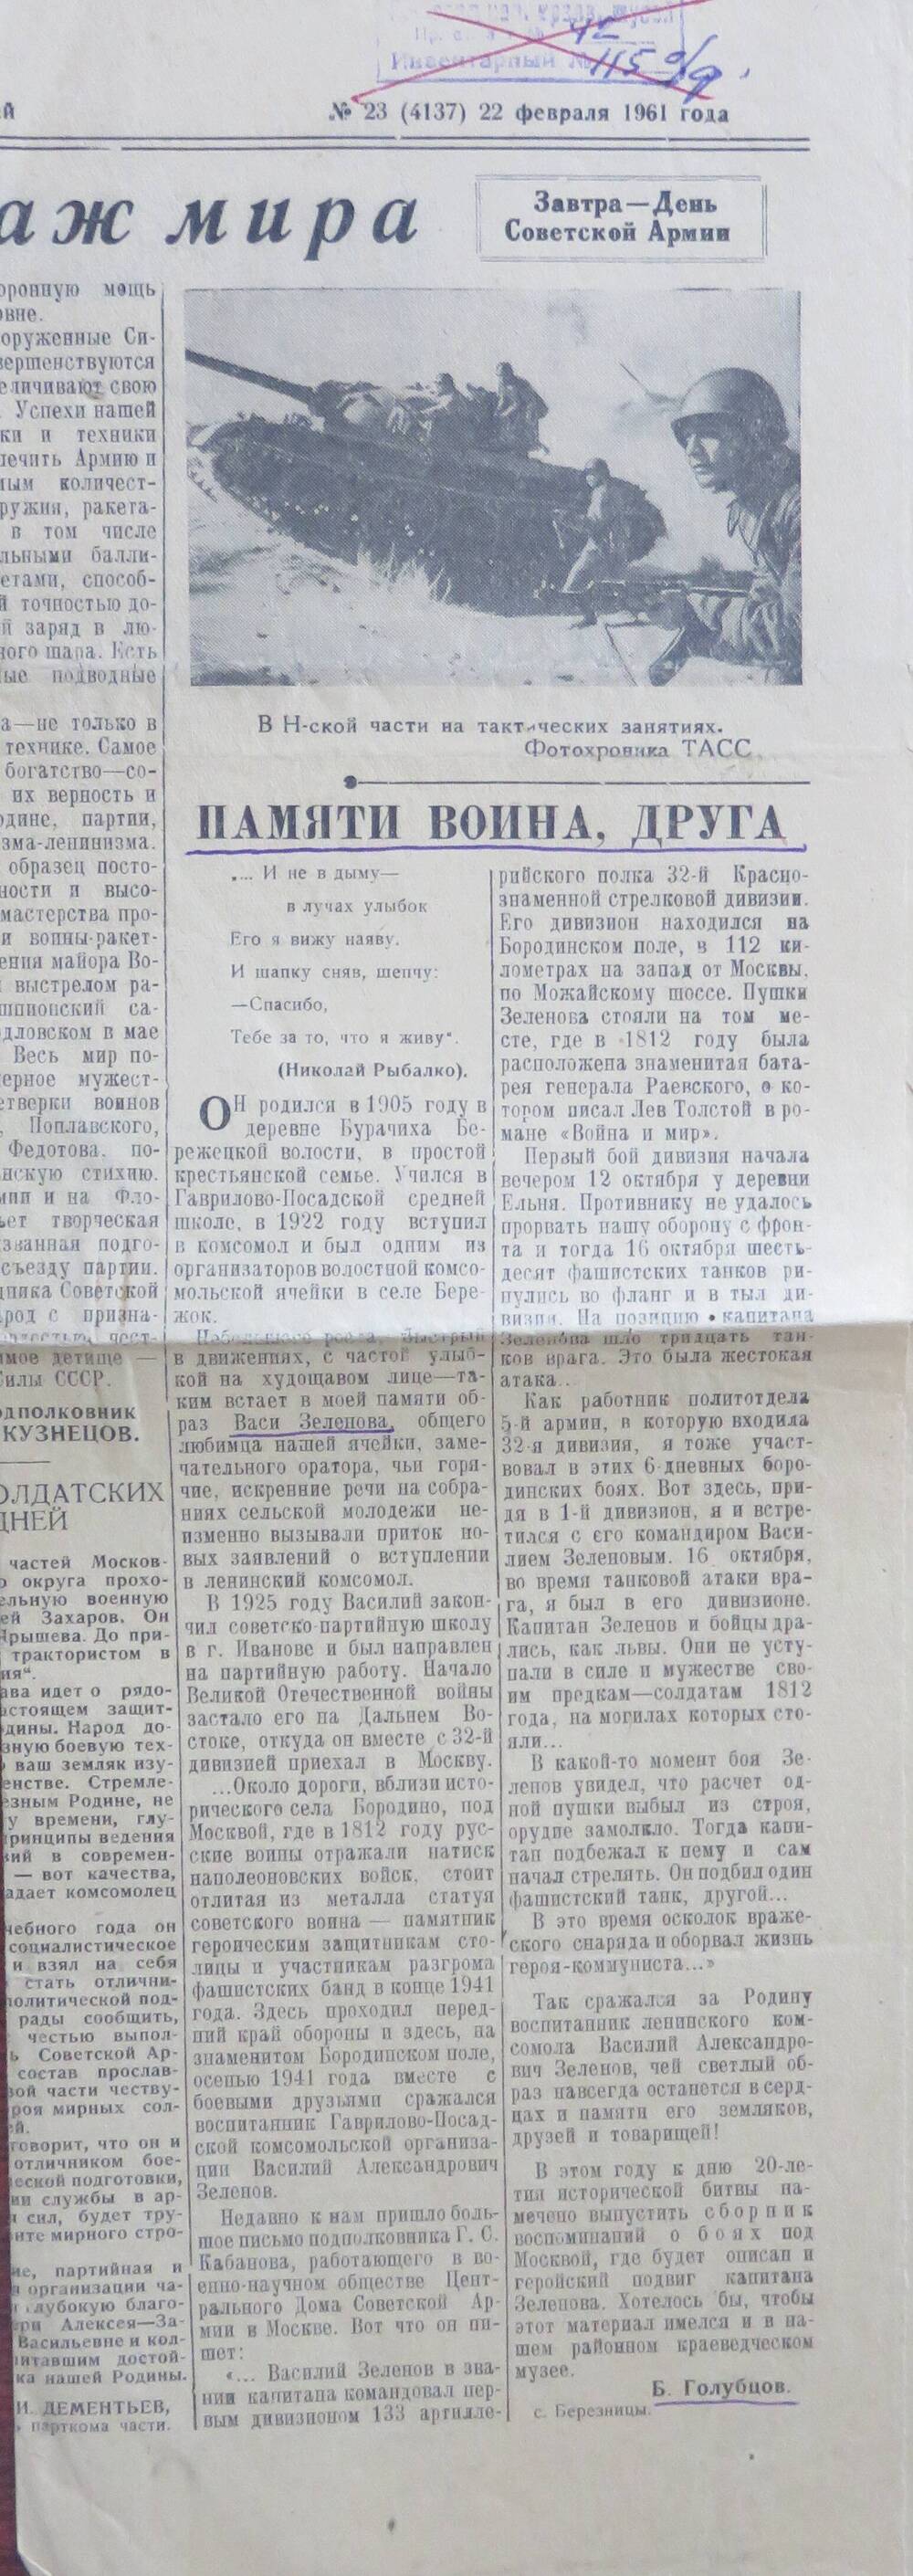 Вырезка из газеты Колхозный край от 22.02.1961 г. №3 о Зеленове В.А.